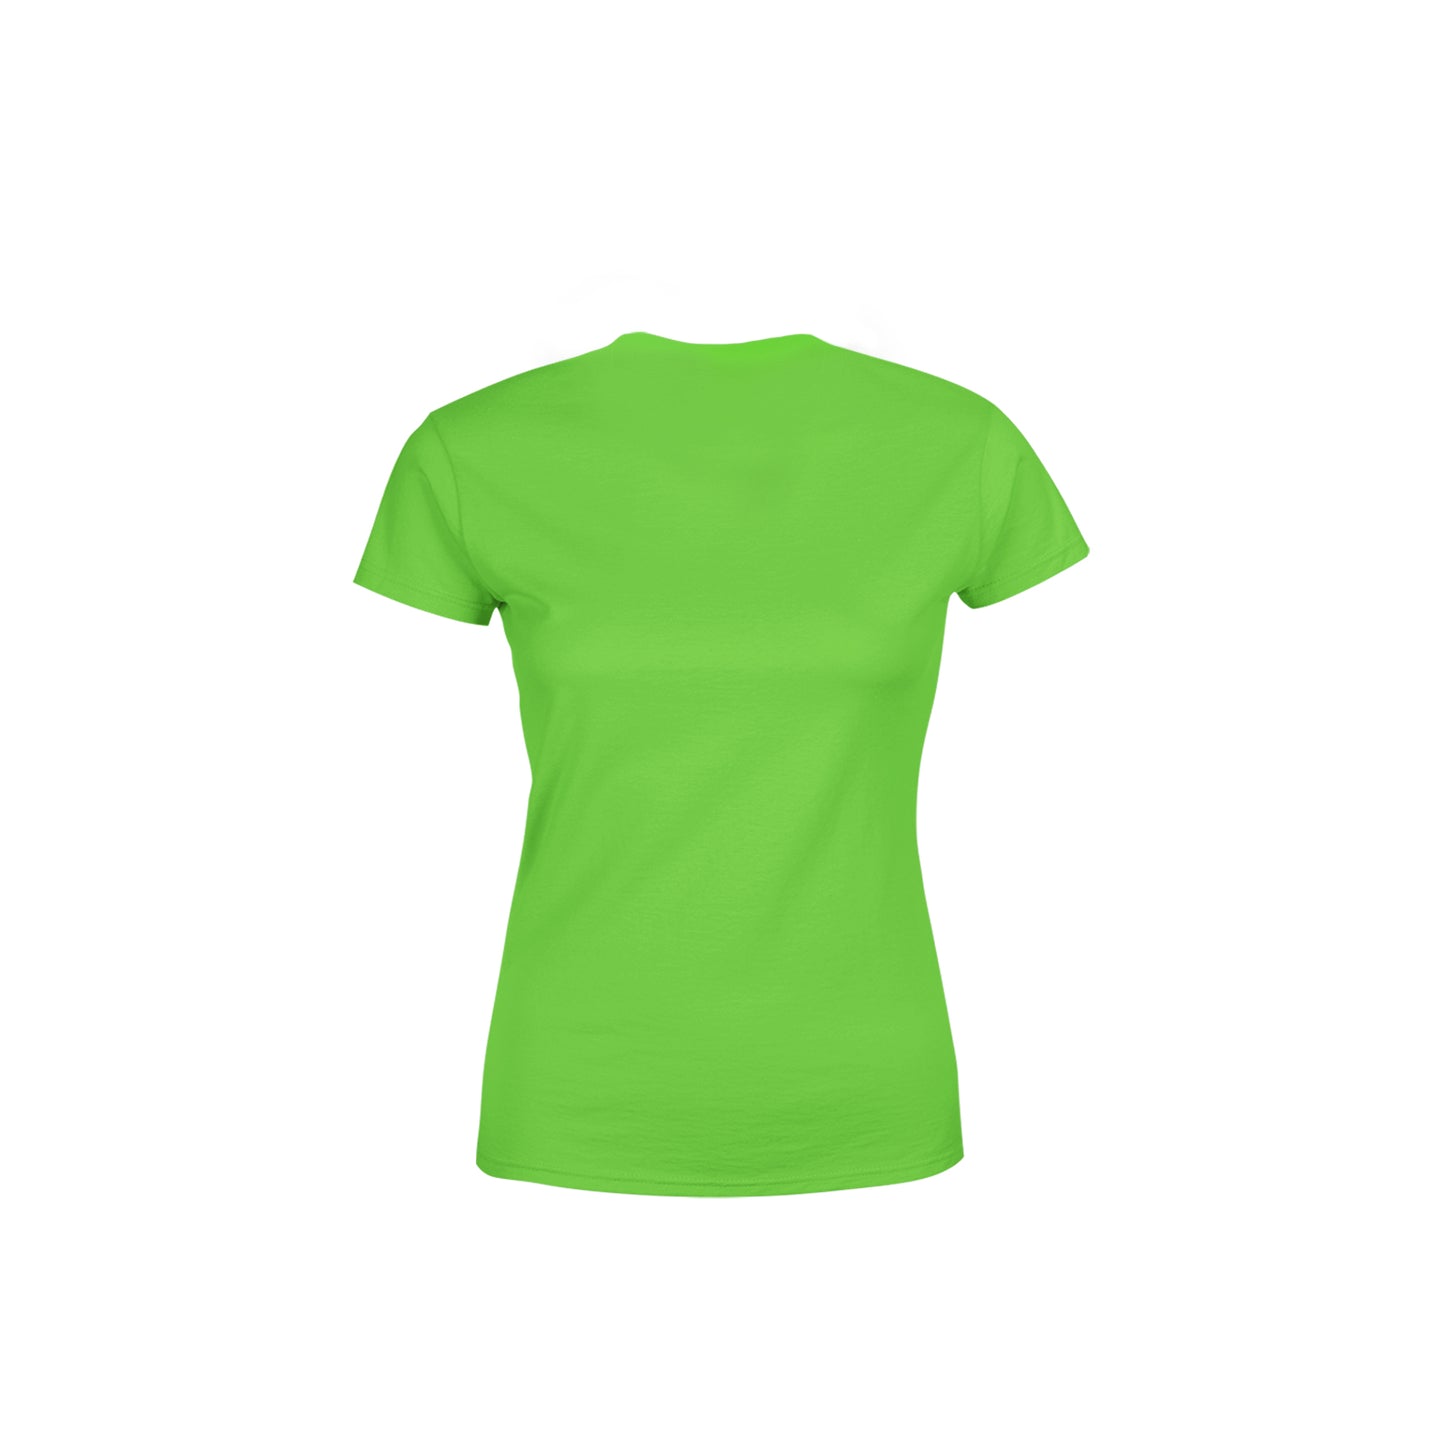 42 Number Women's T-Shirt (Liril Green)